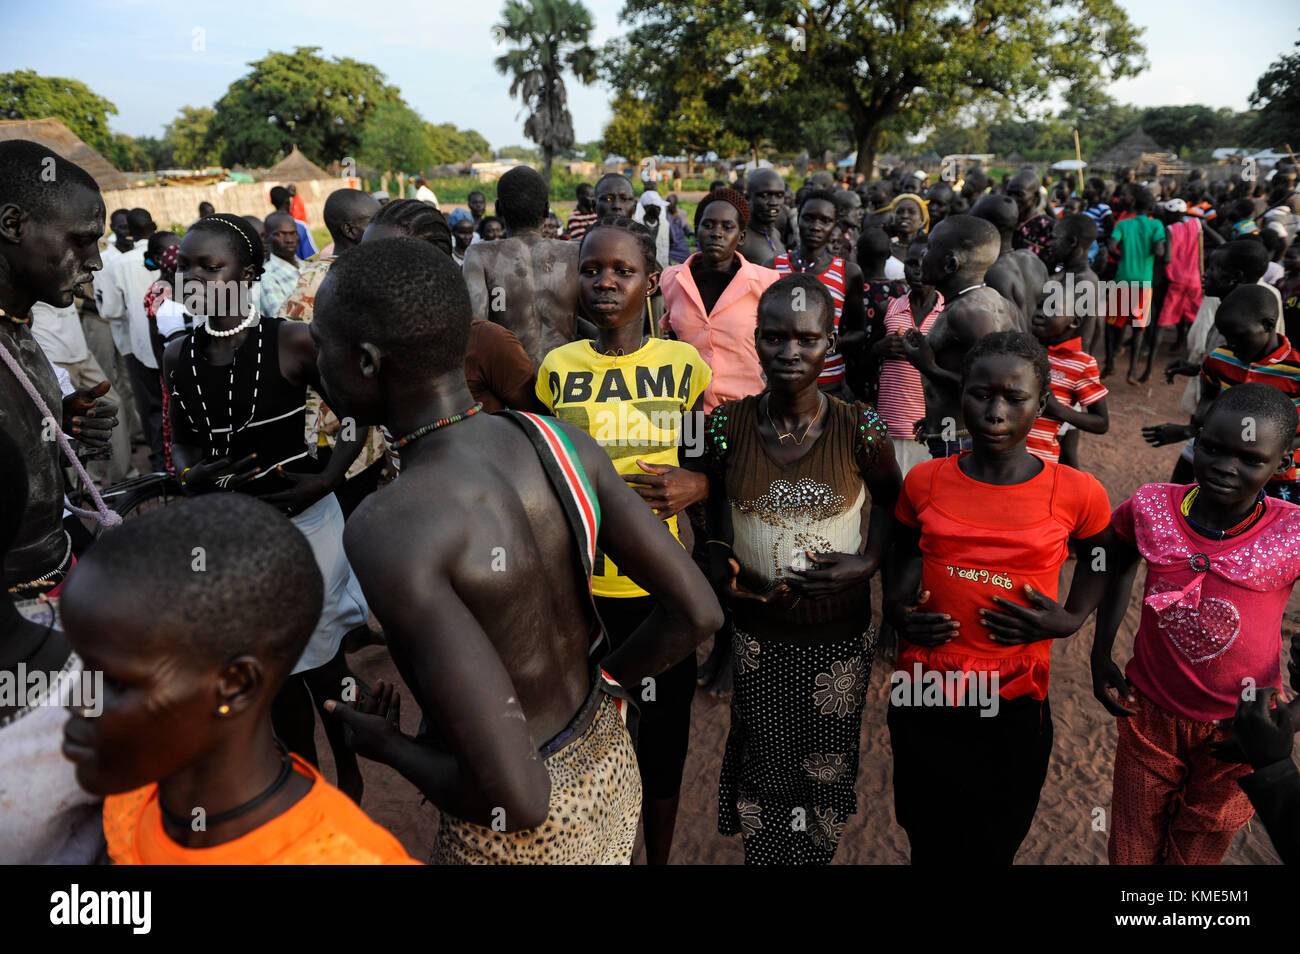 Der Süden des Sudan, Seen, Dorf Mapourdit, Dinka feiern Erntedankfest mit Tänzen, Frau mit Obama T-shirt/SÜD-SUDAN Bahr el Ghazal region, Lakes State, Dorf Mapourdit, Dinka feiern ein Erntedankfest mit traditionellen Taenzen Stockfoto